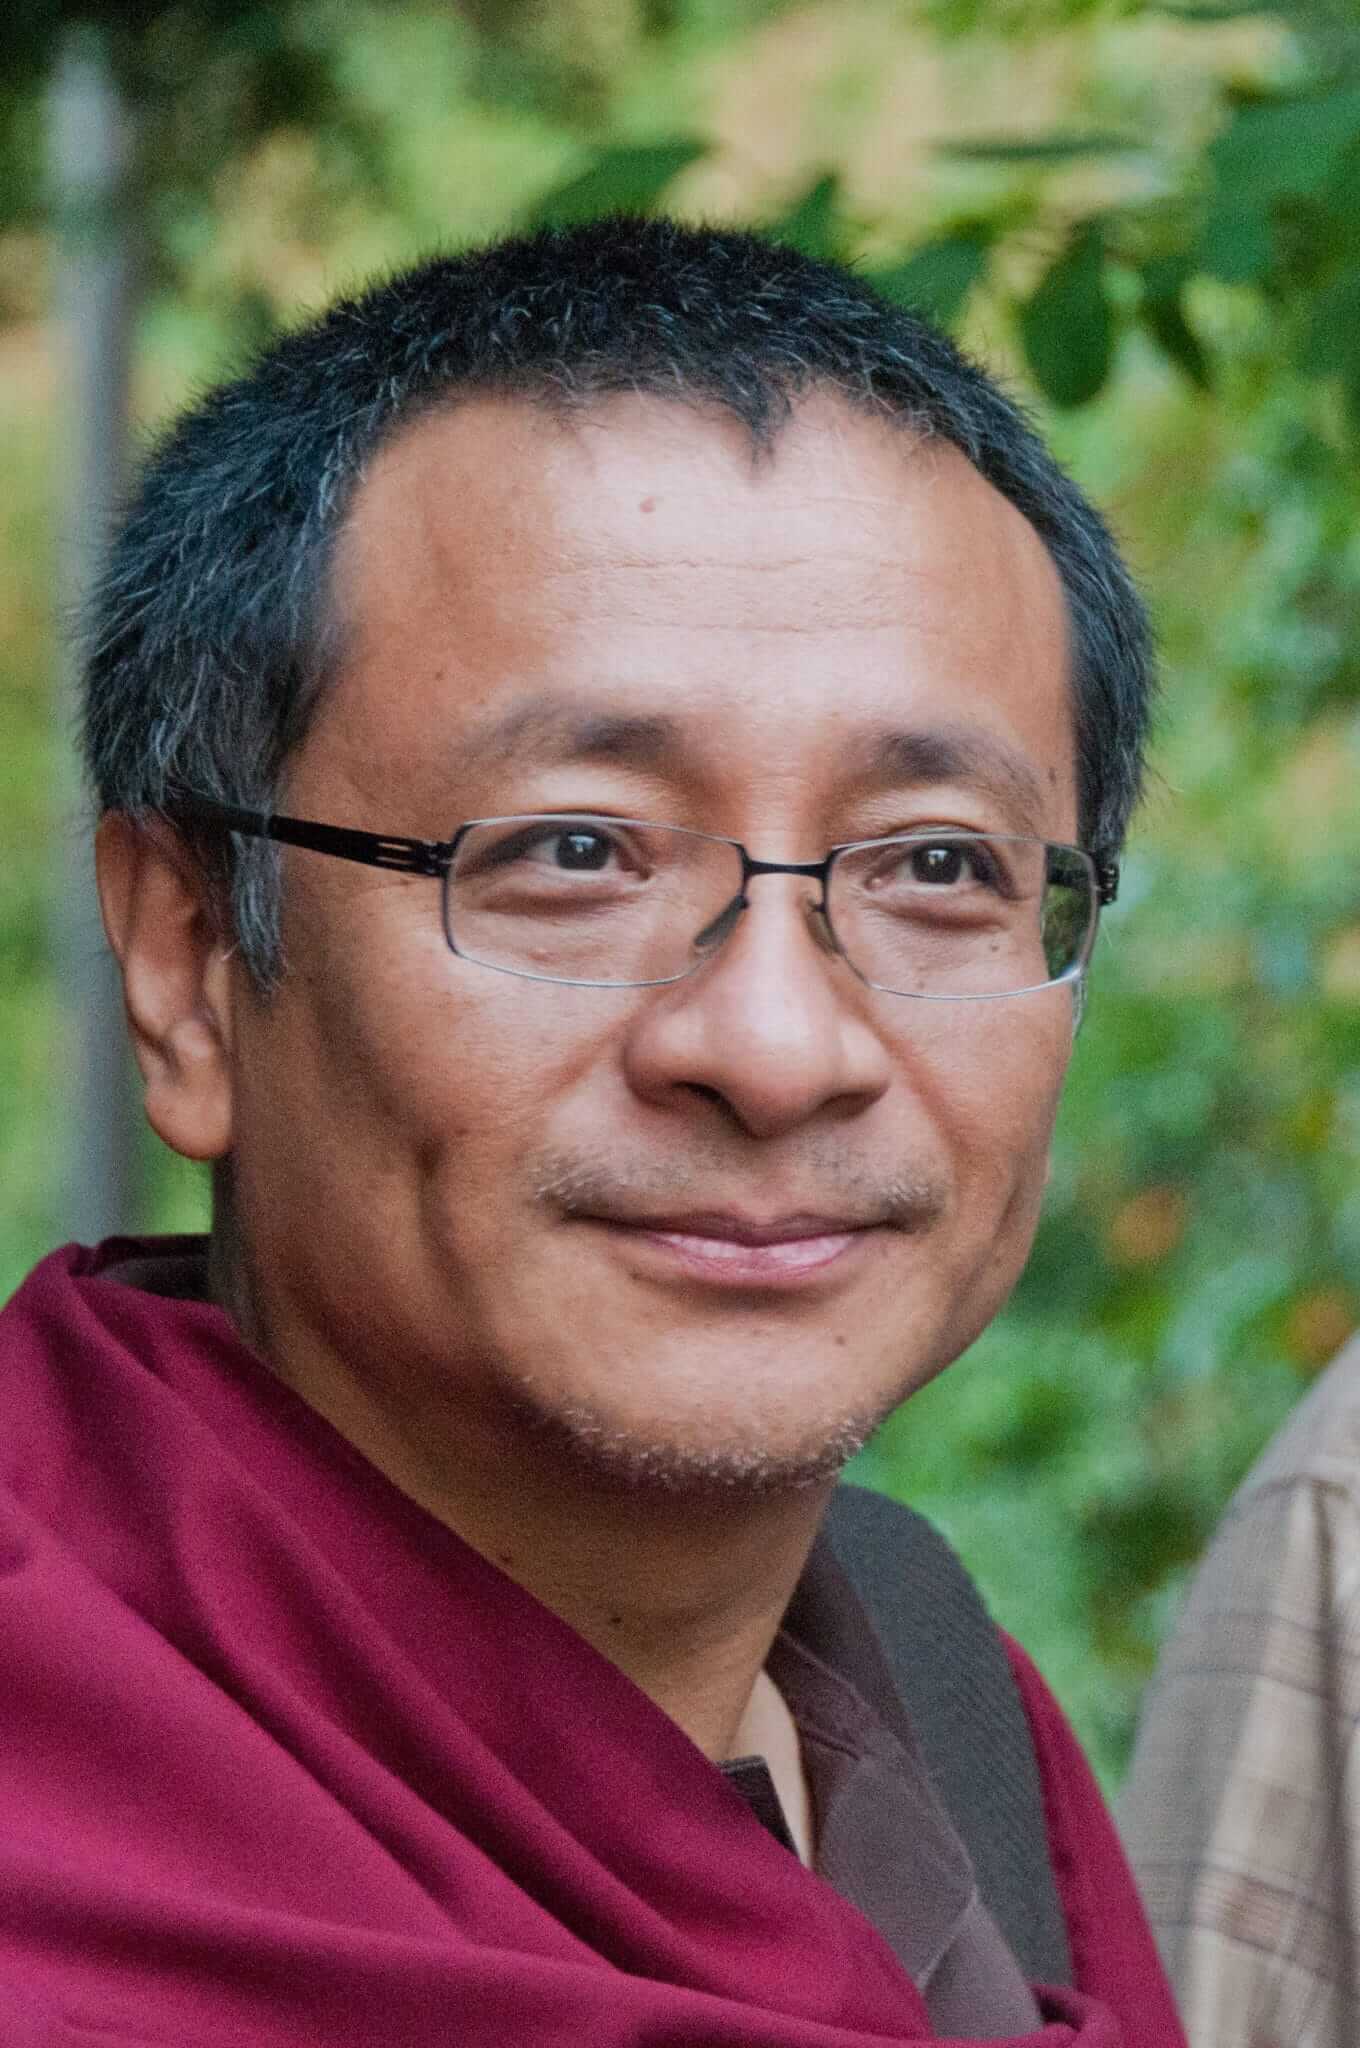 Dzogchen Ponlop Rinpoche - Mahamudra Meditation